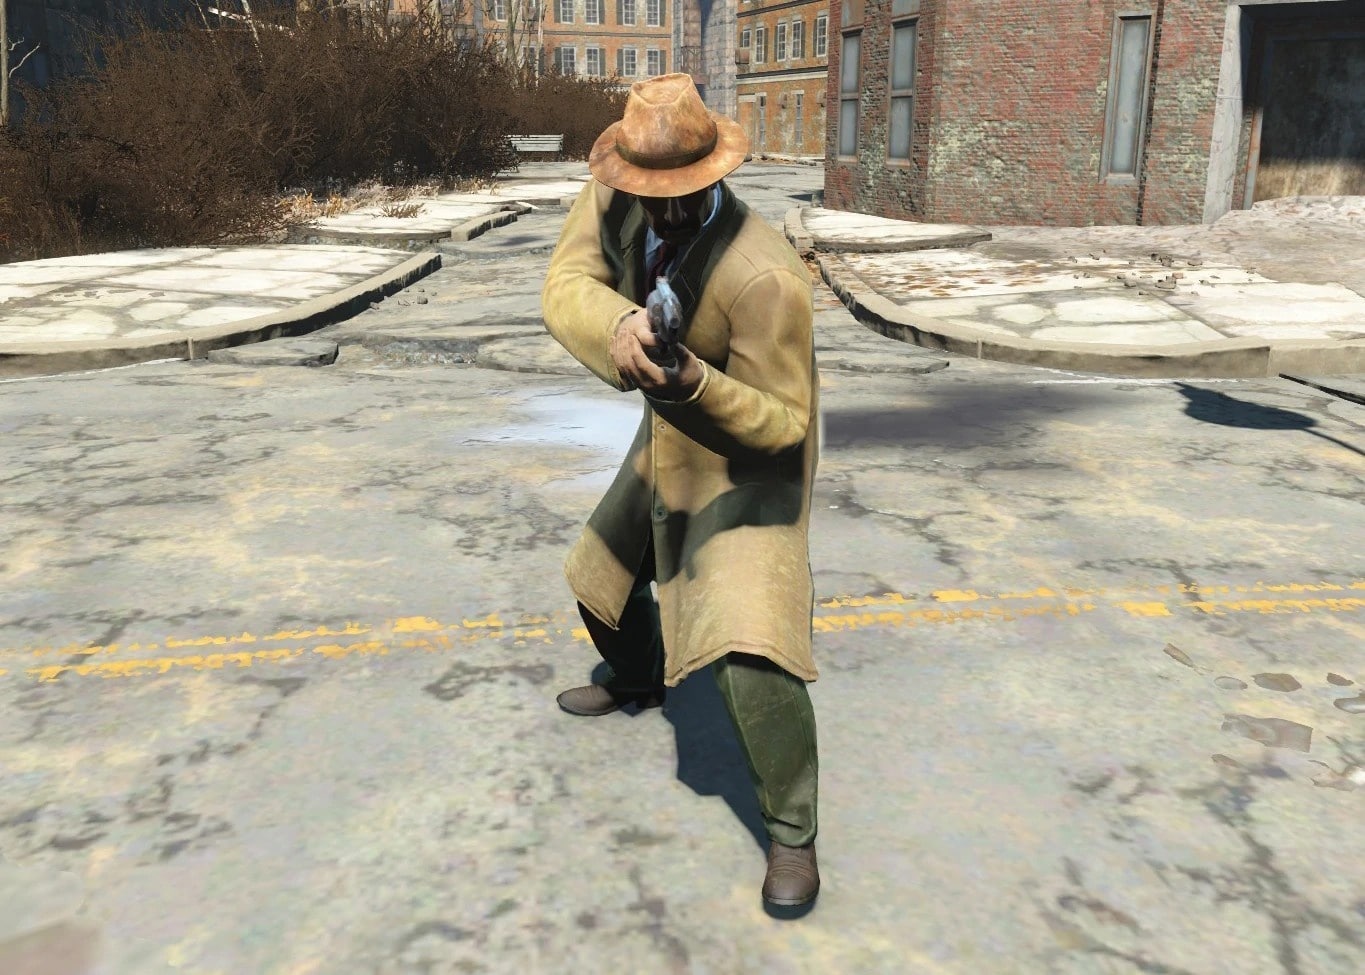 Qui est-il, cet ange gardien qui vient à votre secours et ne rate jamais son coup ? Voici une image de Fallout 4.